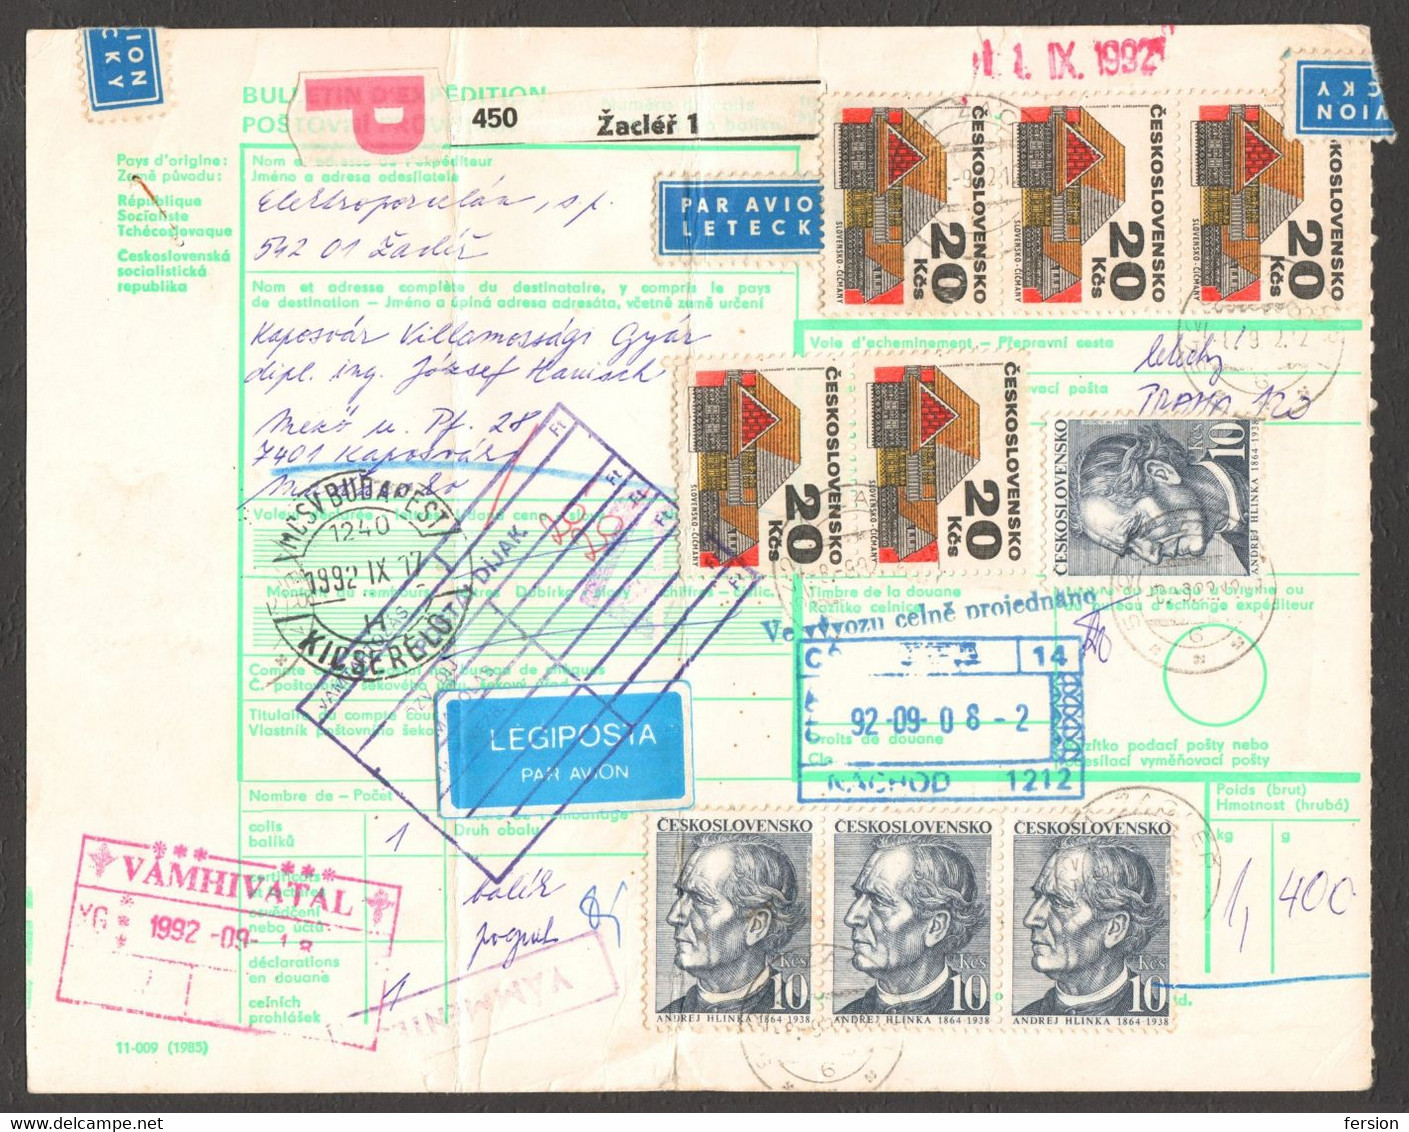 Bulletin D'expédition Parcel Packet Despatch FORM Czechoslovakia Hungary CUSTOMS Postmark AIR MAIL LABEL VIGNETTE 1992 - Non Classés